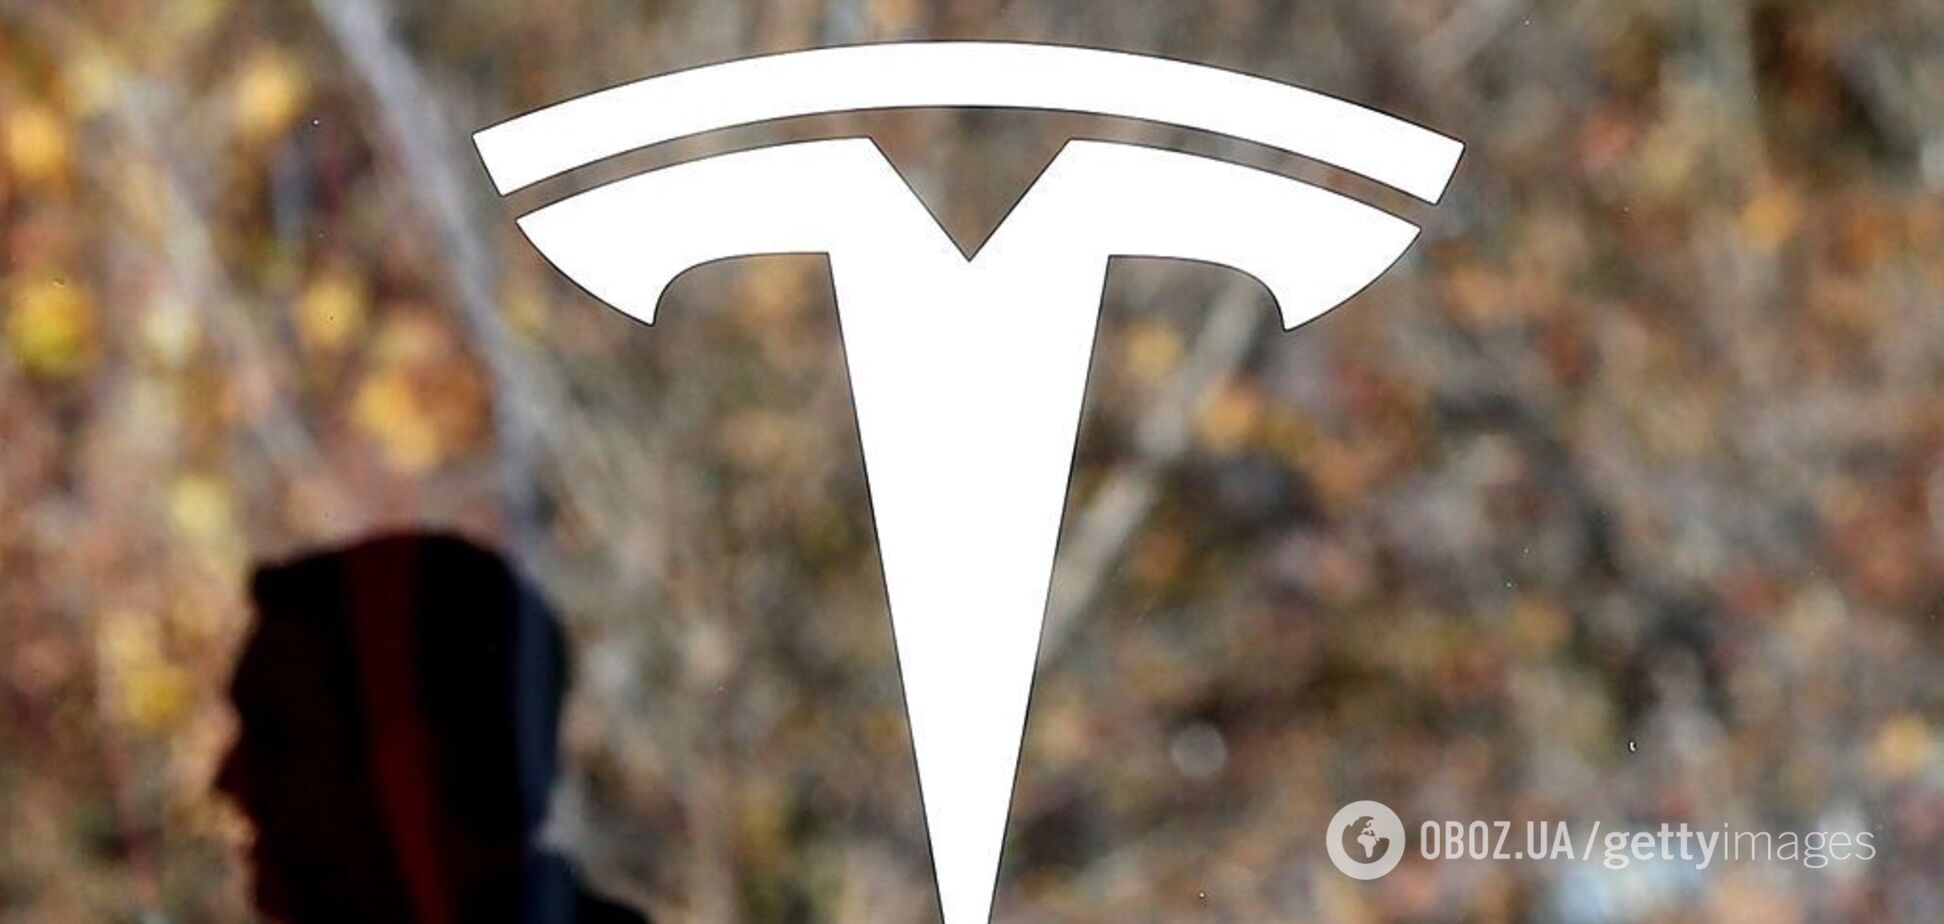 Электрокары Tesla вошли в список лучших изобретений десятилетия по версии Verge